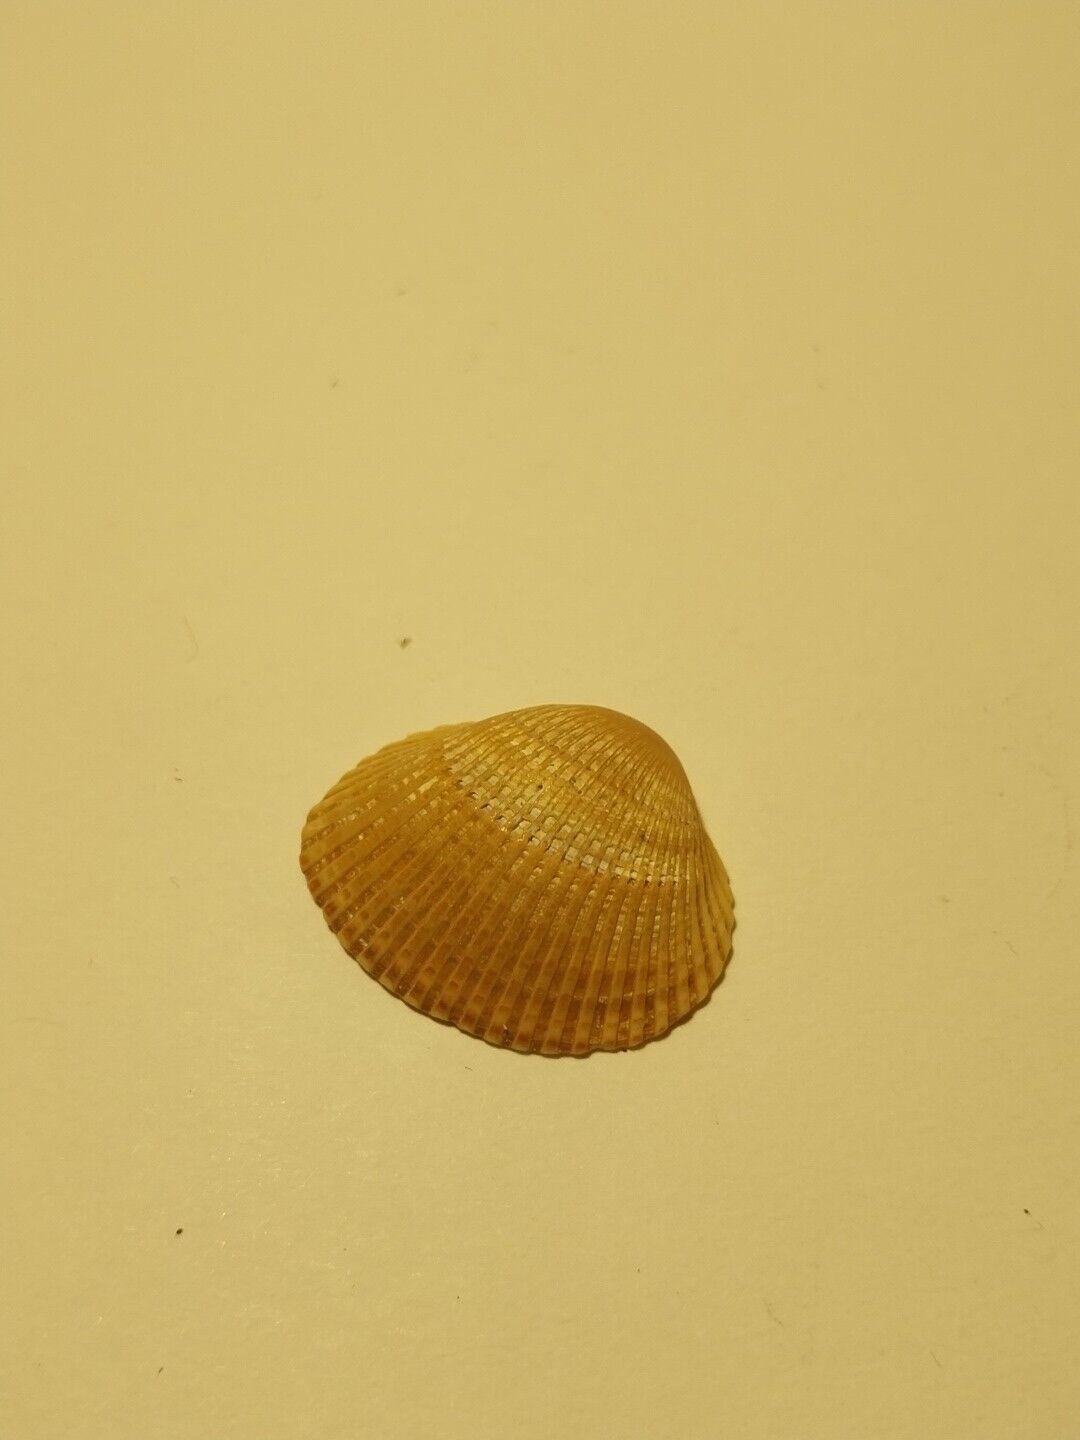 Hand Picked Sea Shell - Anadara Brasiliana